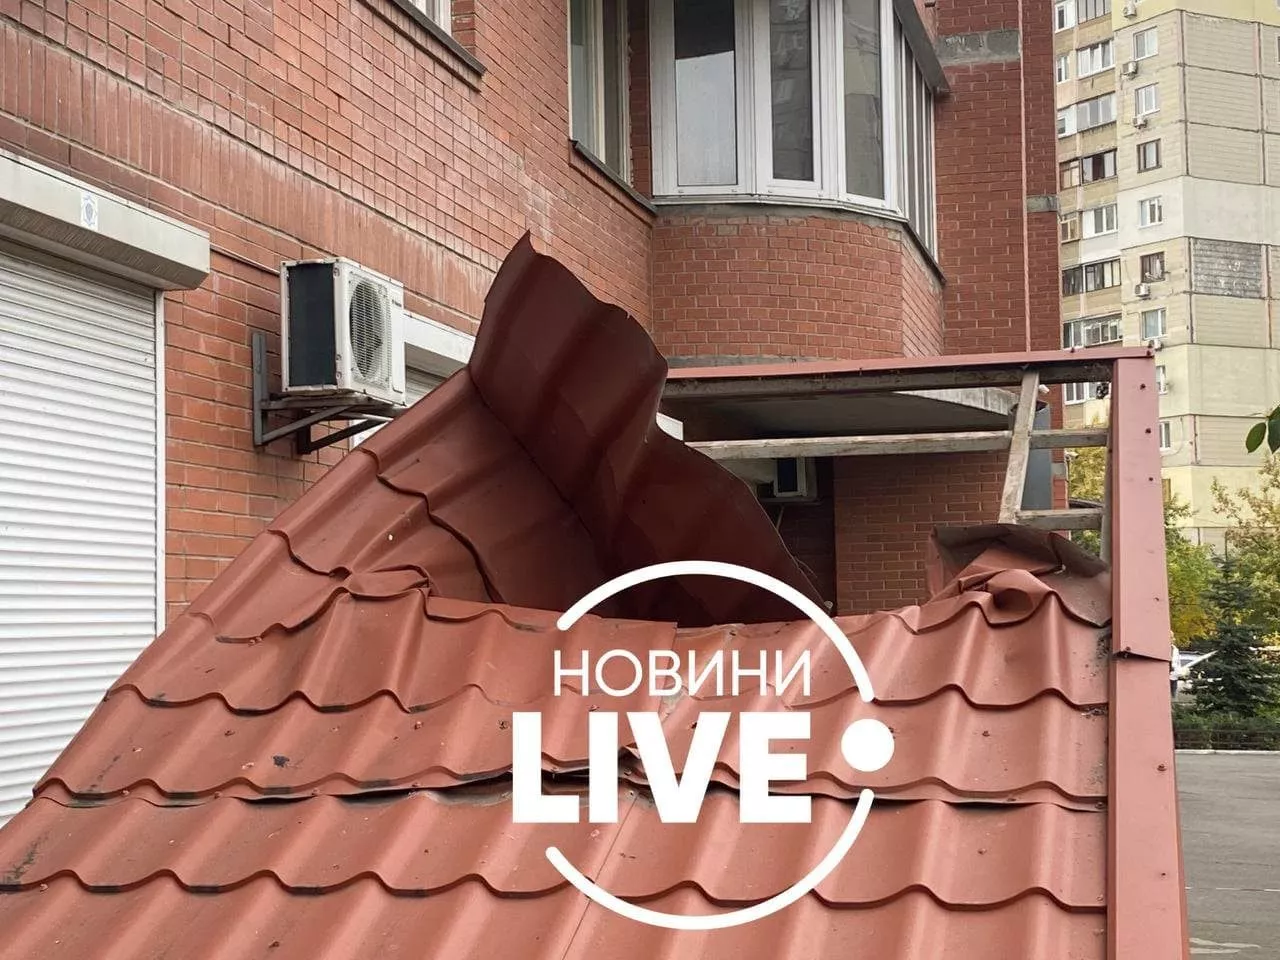 У Дарницькому районі столиці з вікна багатоповерхівки випала жінка / Фото: Новини LIVE